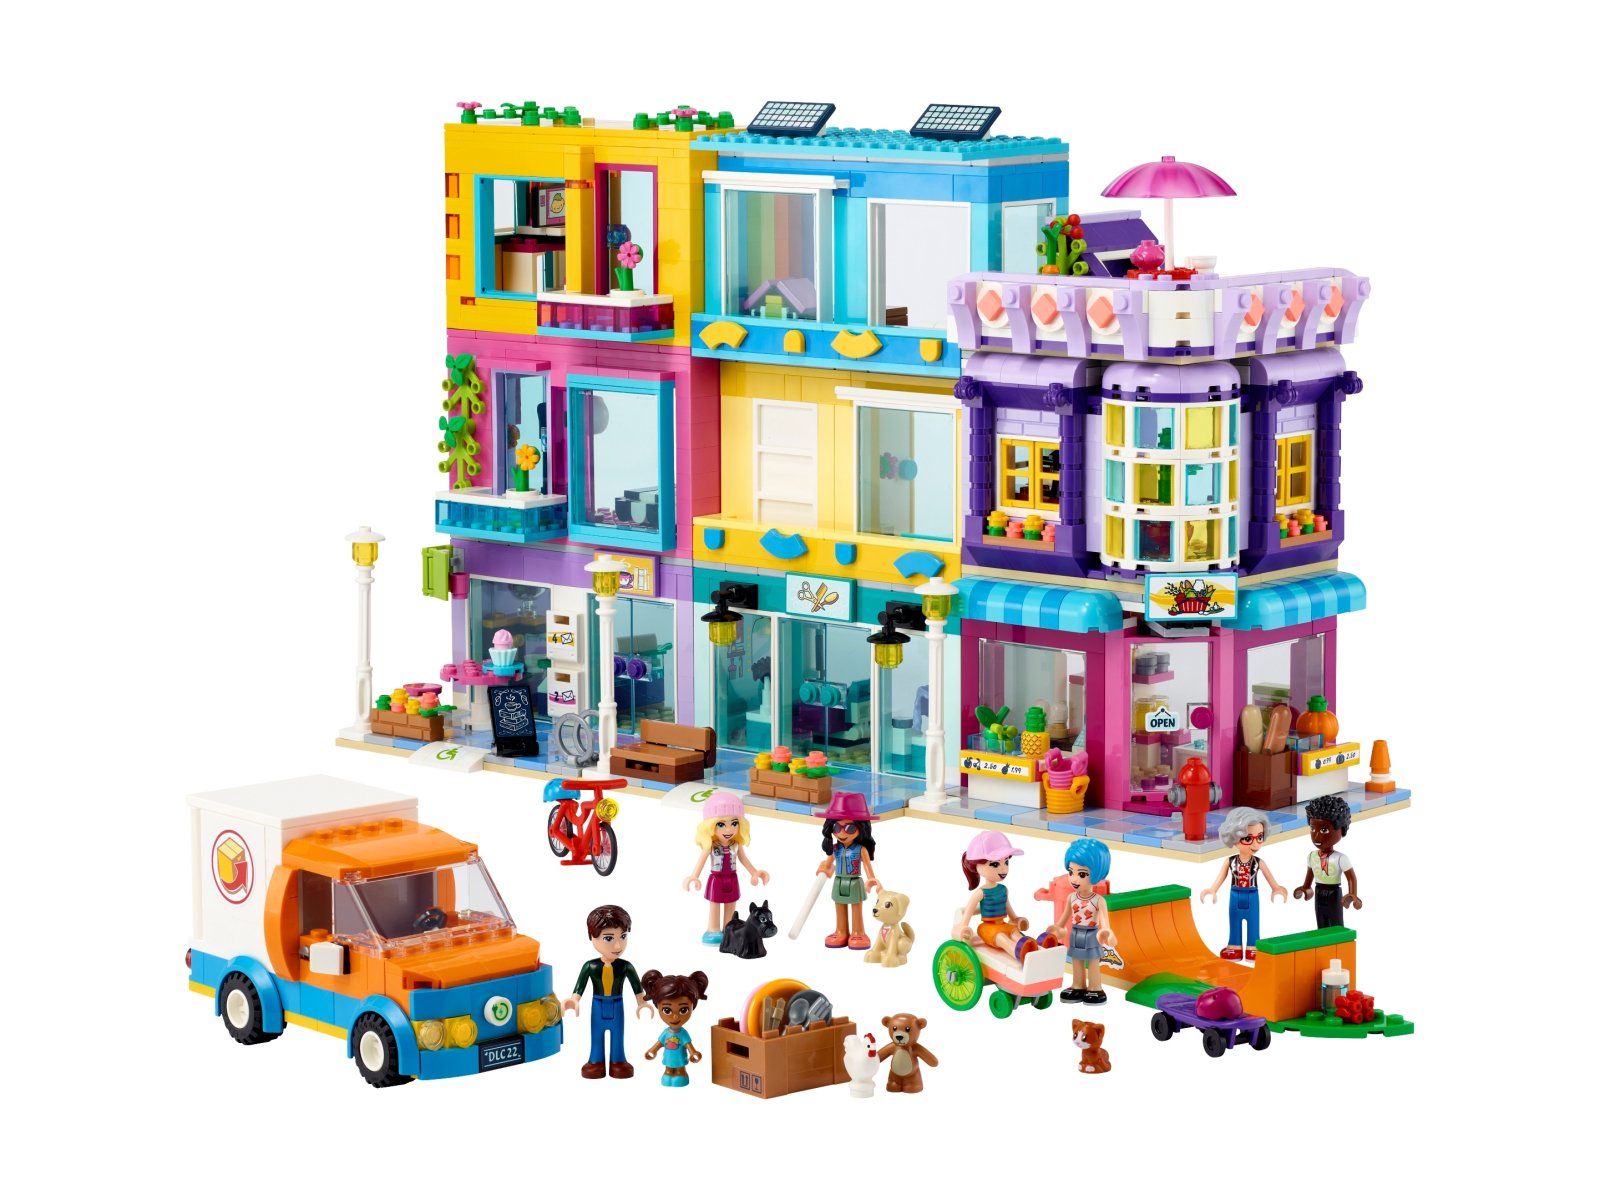 LEGO 41704 Friends Budynki przy głównej ulicy